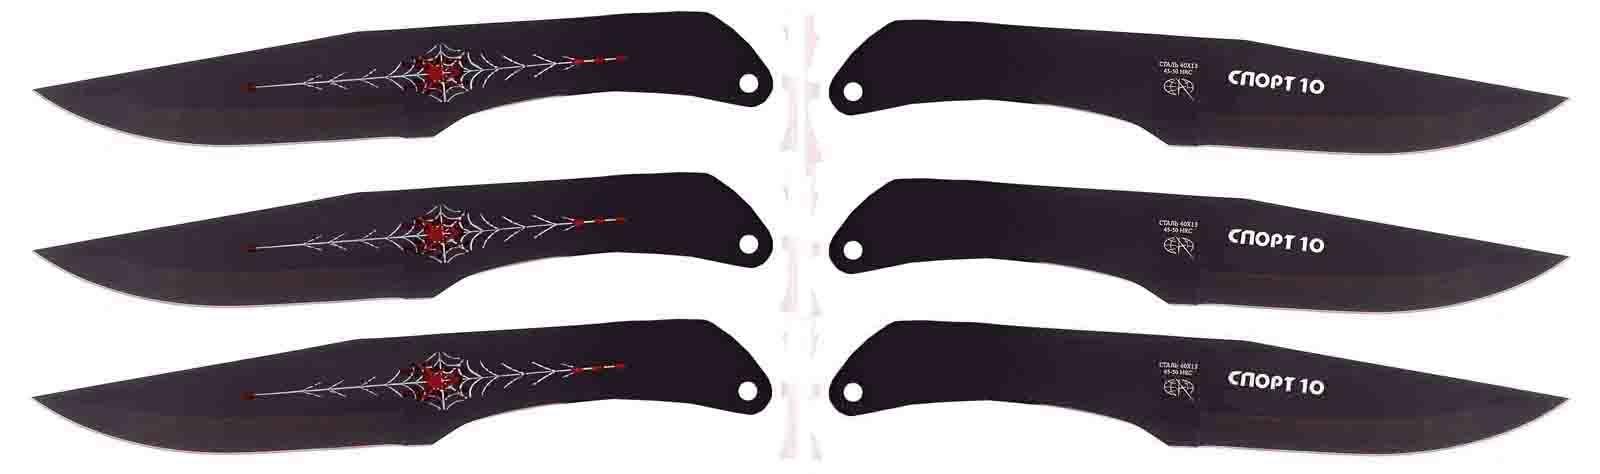 Набор из 3-х метательных  ножей Спорт-10 от Pirat